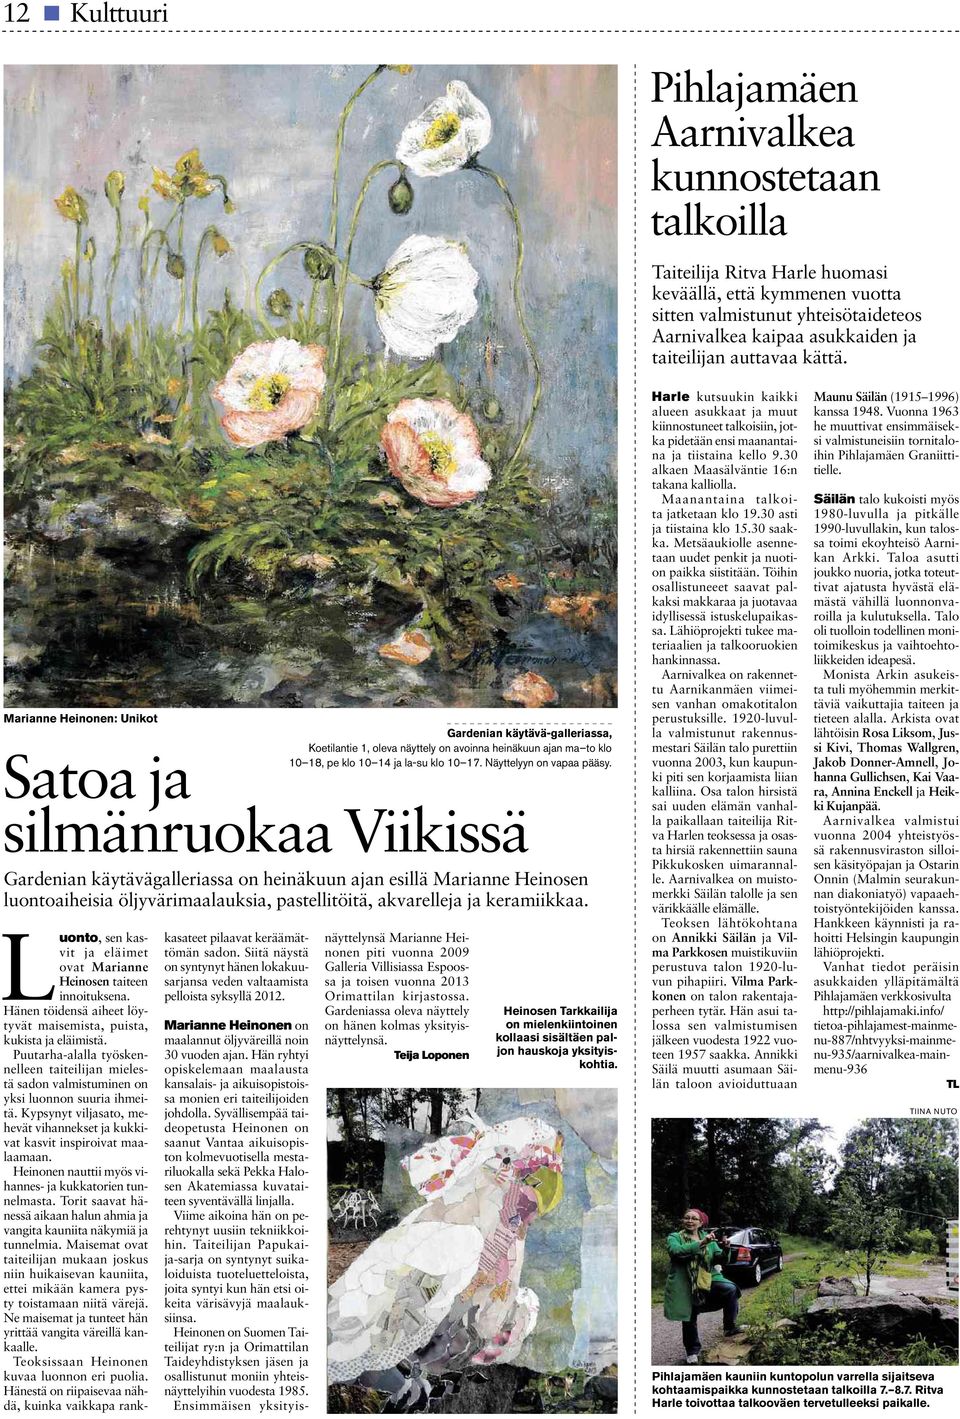 Marianne Heinonen: Unikot Satoa ja silmänruokaa Viikissä Gardenian käytävägalleriassa on heinäkuun ajan esillä Marianne Heinosen luontoaiheisia öljyvärimaalauksia, pastellitöitä, akvarelleja ja